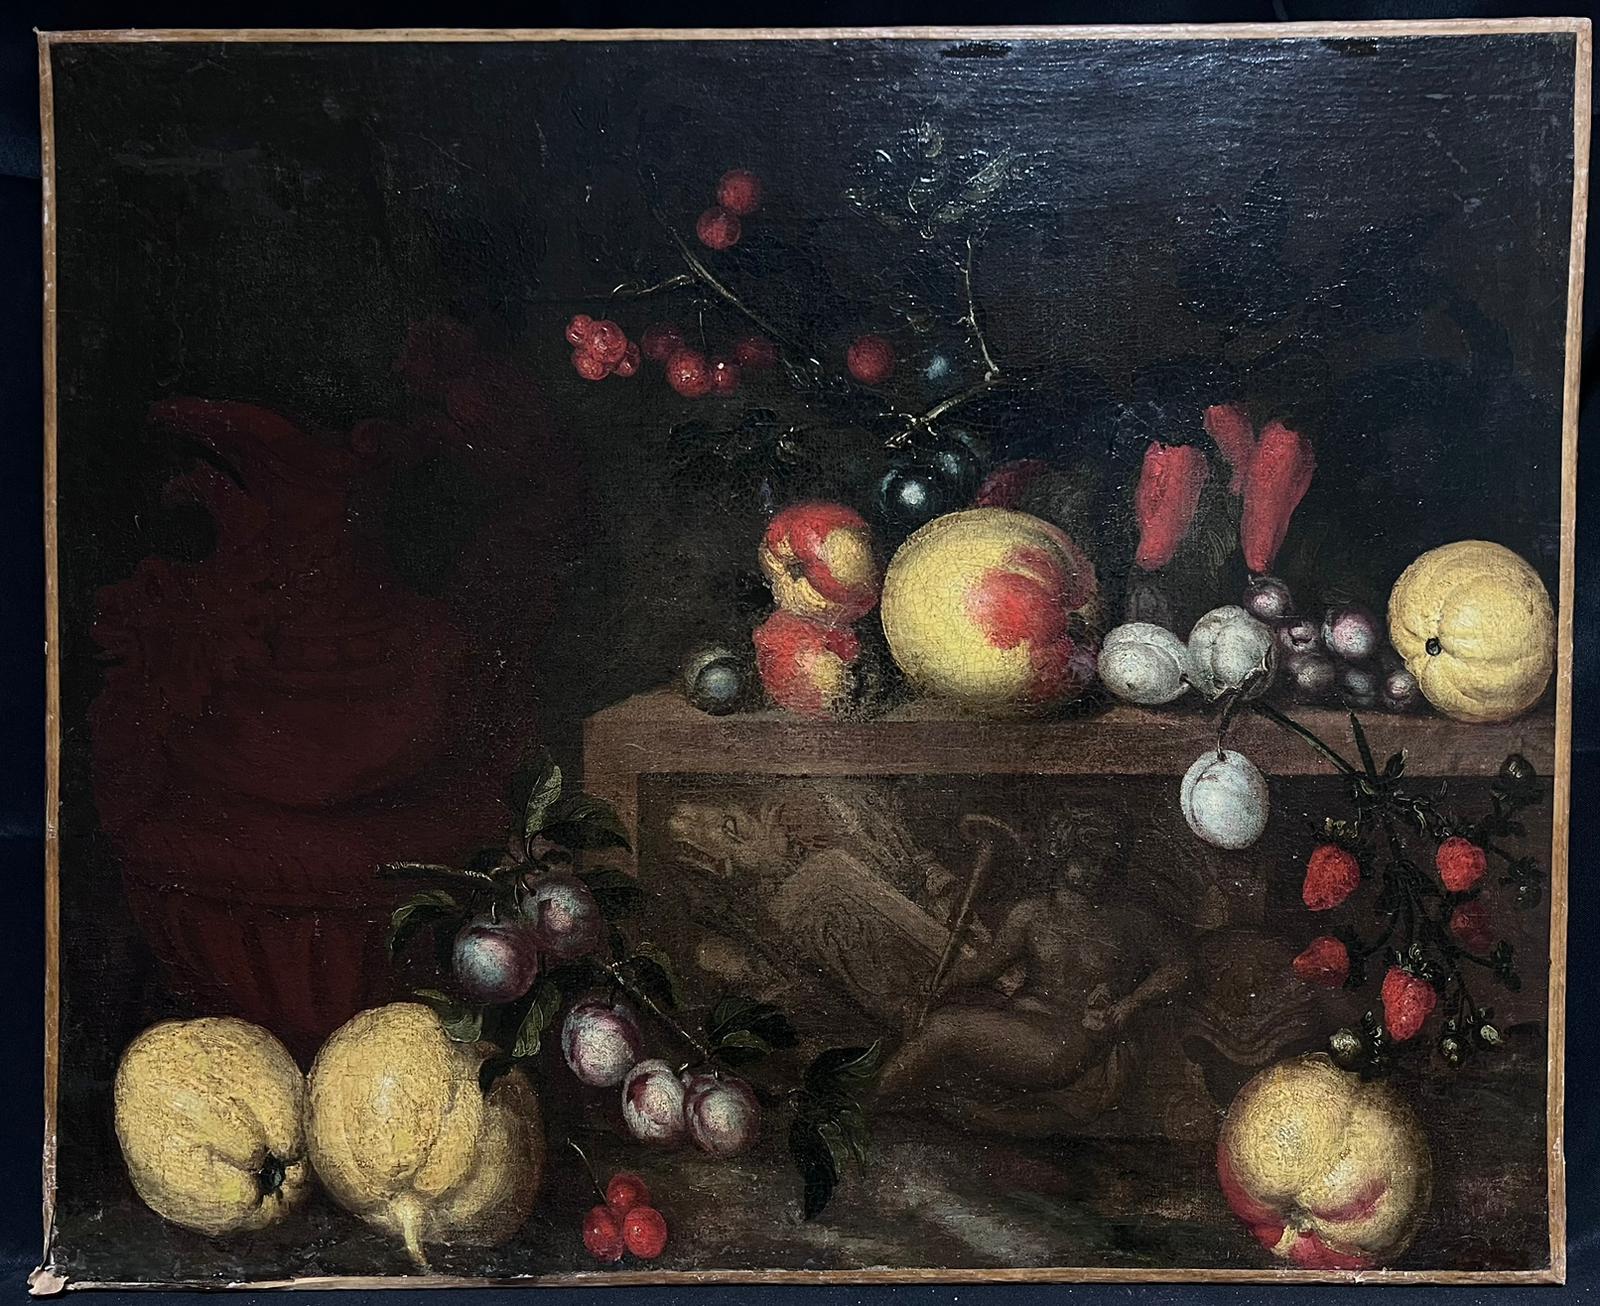 Feines Stillleben des 17. Jahrhunderts, Ölgemälde eines alten Meisters, Obst auf Ledge, Italien – Painting von Italian 17th Century Old Master